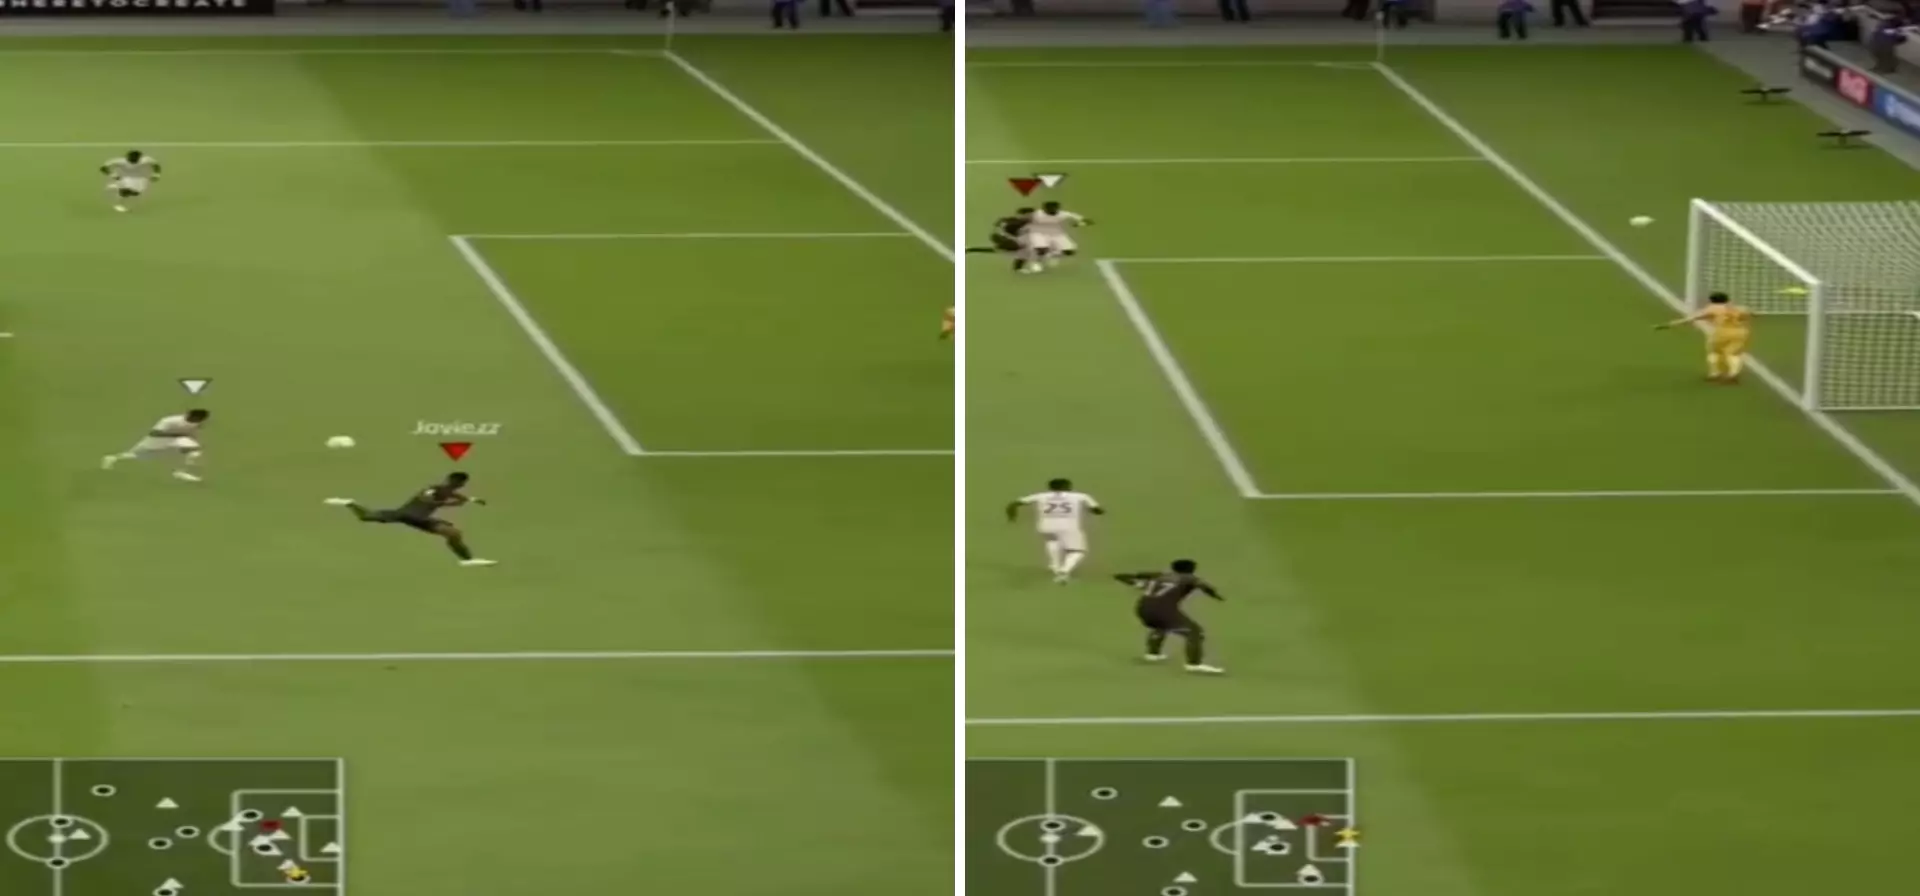 FIFA 19 Player Scores Most Outrageous Scorpion Kick With Ousmane Dembélé